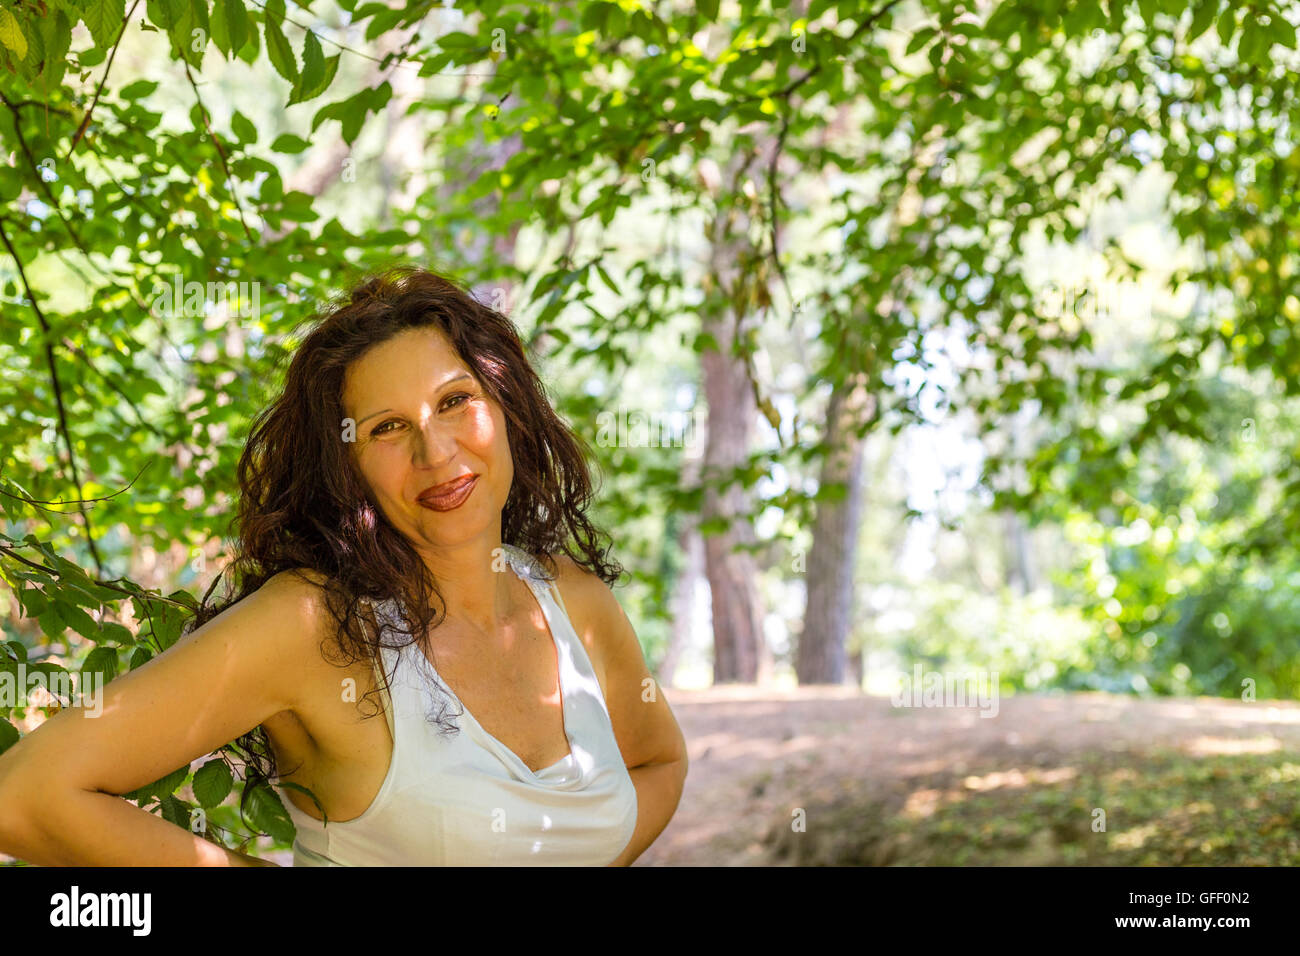 Nahaufnahme von vollbusige edel Reife Frau lächelt in die Kamera vor grünen  Garten Hintergrund mit Textfreiraum Stockfotografie - Alamy